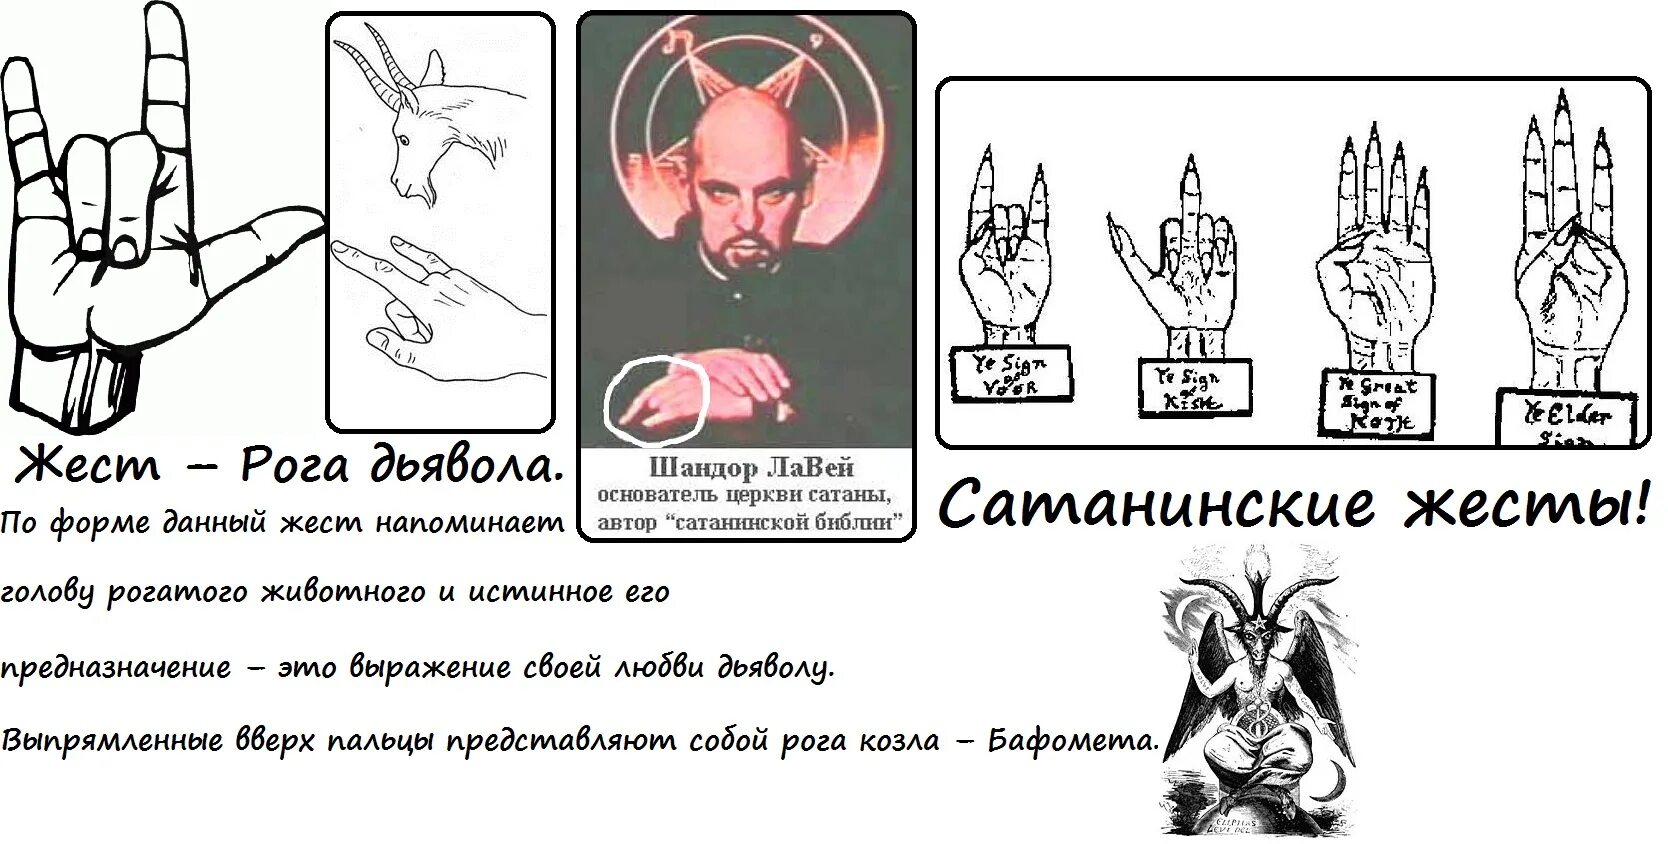 Что обозначает сатана. Коза знак сатаны на пальцах. Жест сатаны Бафомета. Масоны знаки и символы на пальцах. Сатанинские знаки и символы на пальцах.